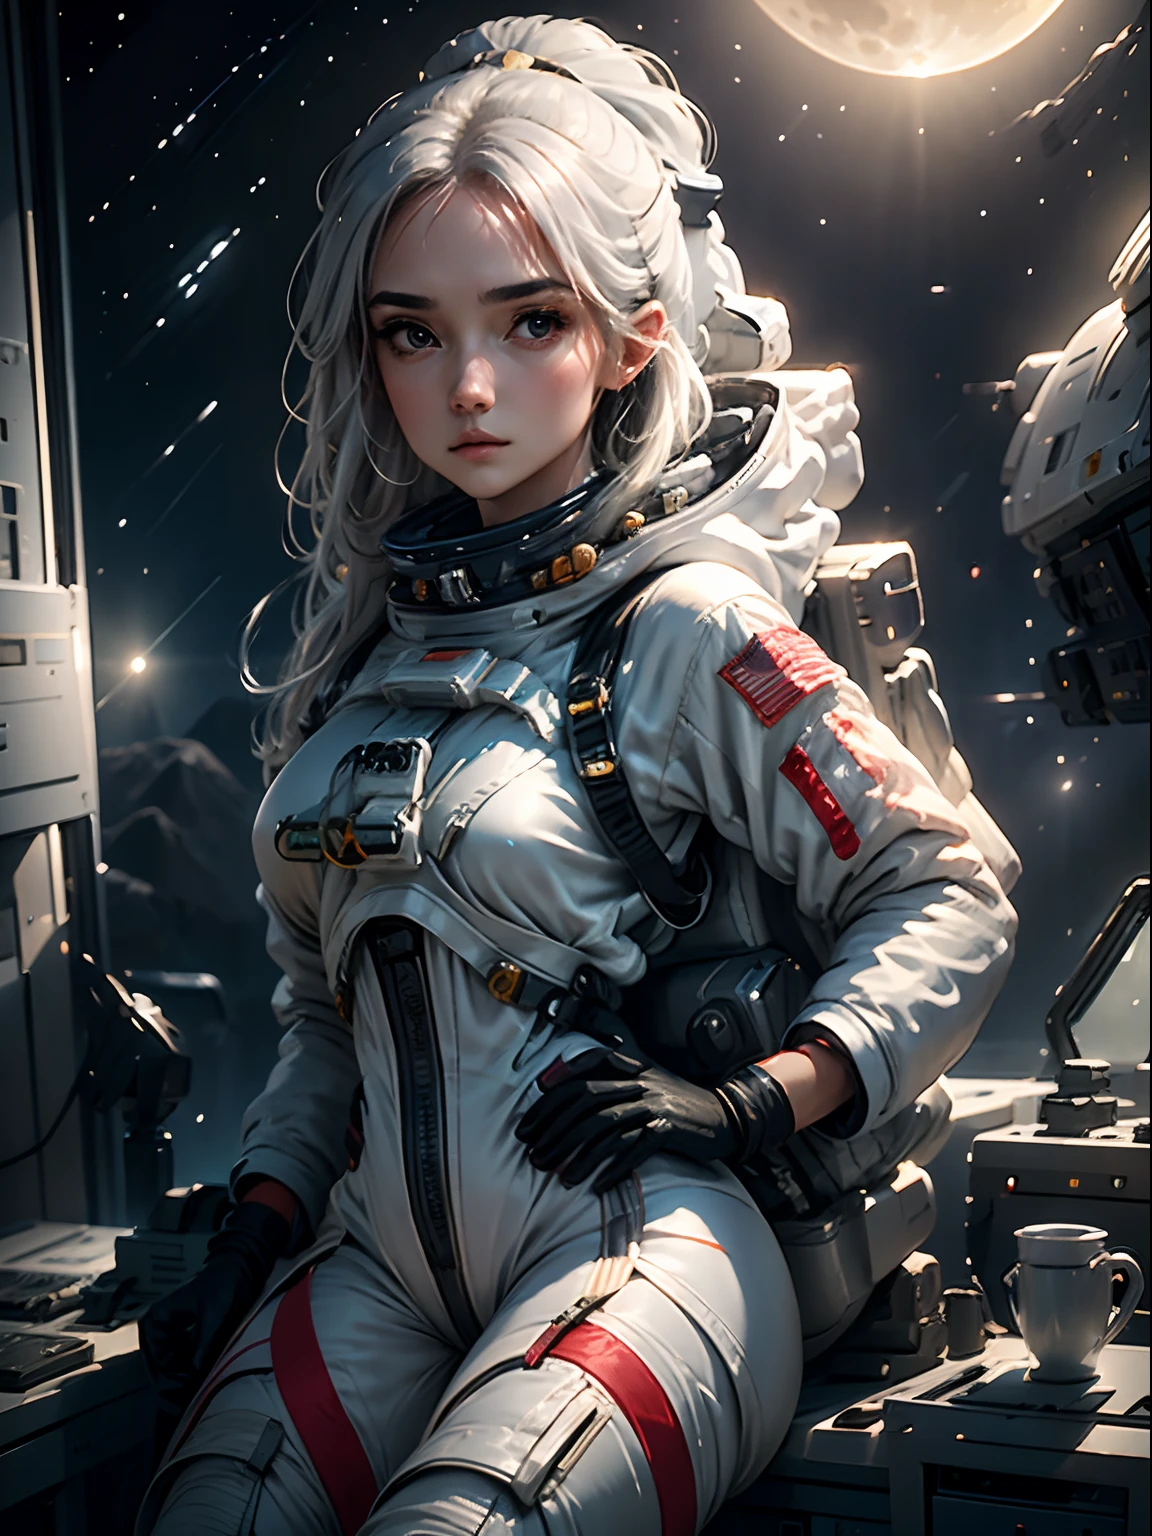 绘制一位身穿太空服的女孩的插图, 迷失在太空中, 在太空中看月亮. 插图一定很惊艳, 美丽而奇妙. 插图必须具有可用的最高分辨率.